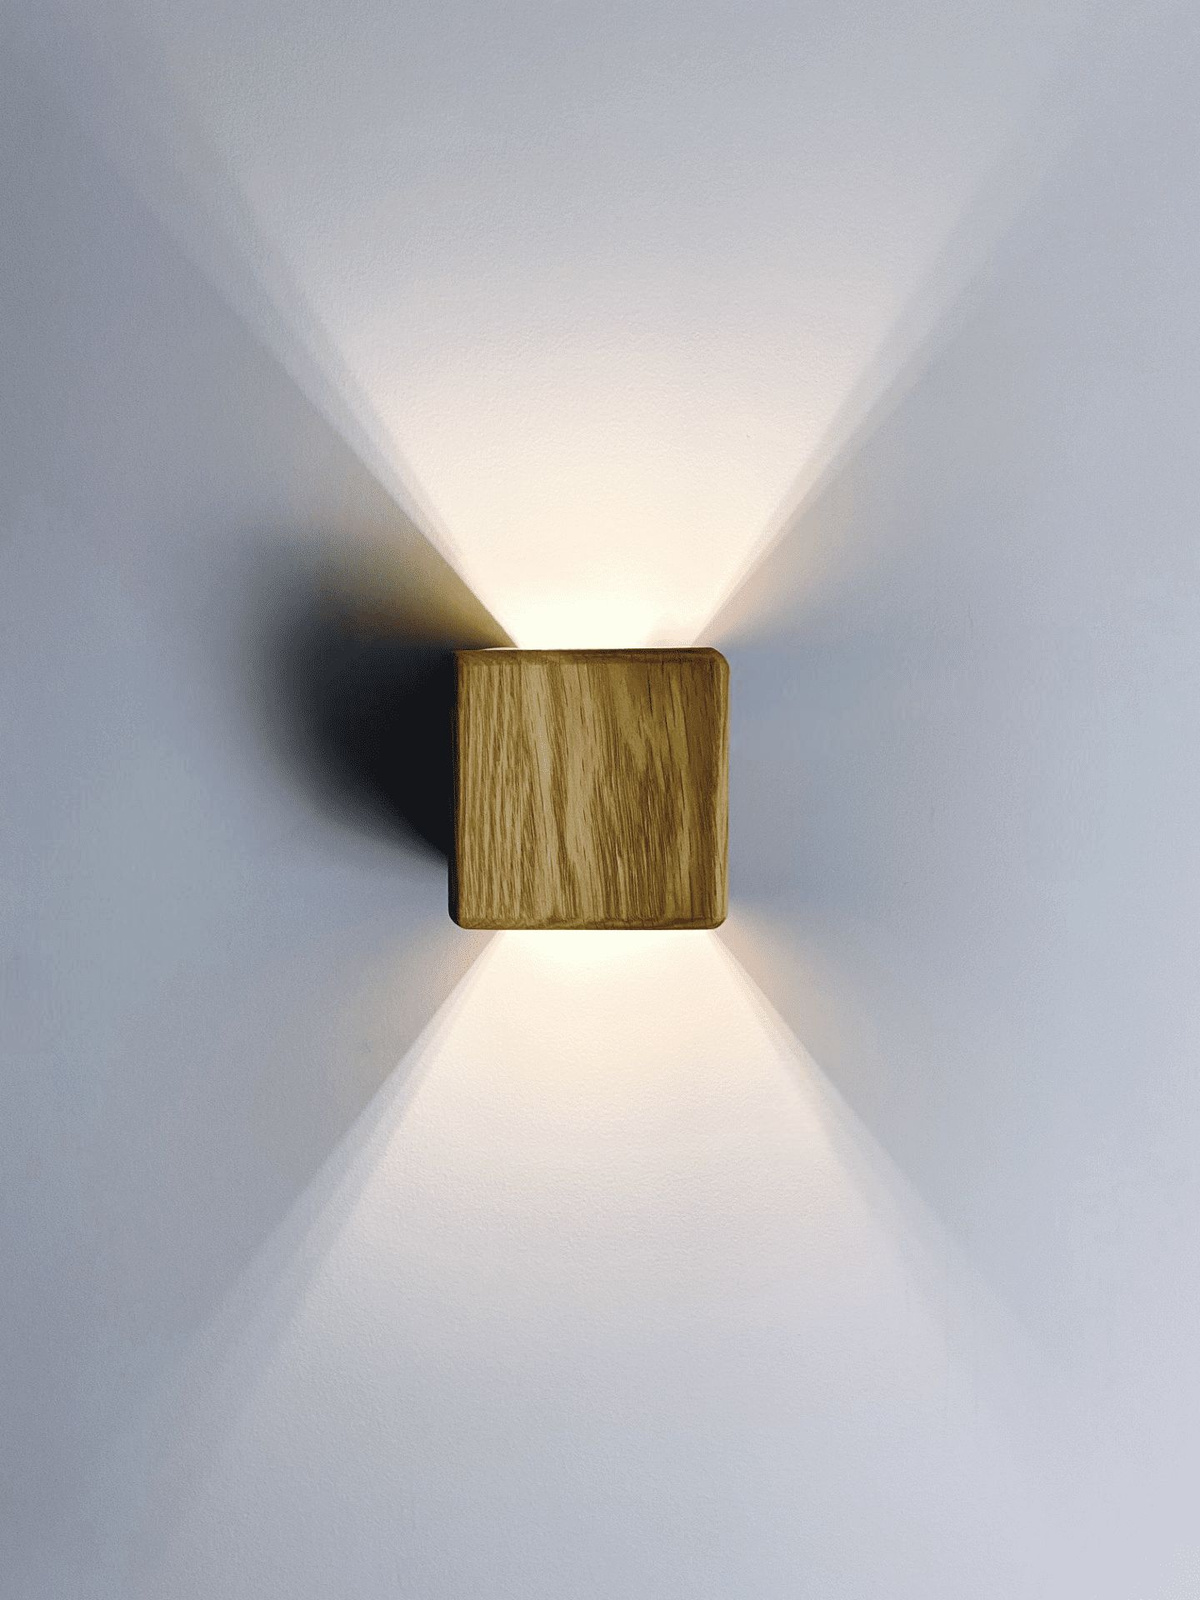 Настенный светодиодный светильник - это стильный предмет для создания уникальной атмосферы в вашем доме. Светильник настенный бра выполнен из 100% массива дуба, является прекрасным сочетанием современного дизайна и экологичности. Каждый такой светильник уникален, поскольку создаётся вручную в нашей мастерской. Узор на каждом светильнике индивидуален. Ночник-светильник будет уместен практически в любом современном интерьере, начиная со скандинавского стиля, лофт и заканчивая хай-теком. Также бра подходит для классического оформления помещений. Каждый светильник покрыт специальным маслом.